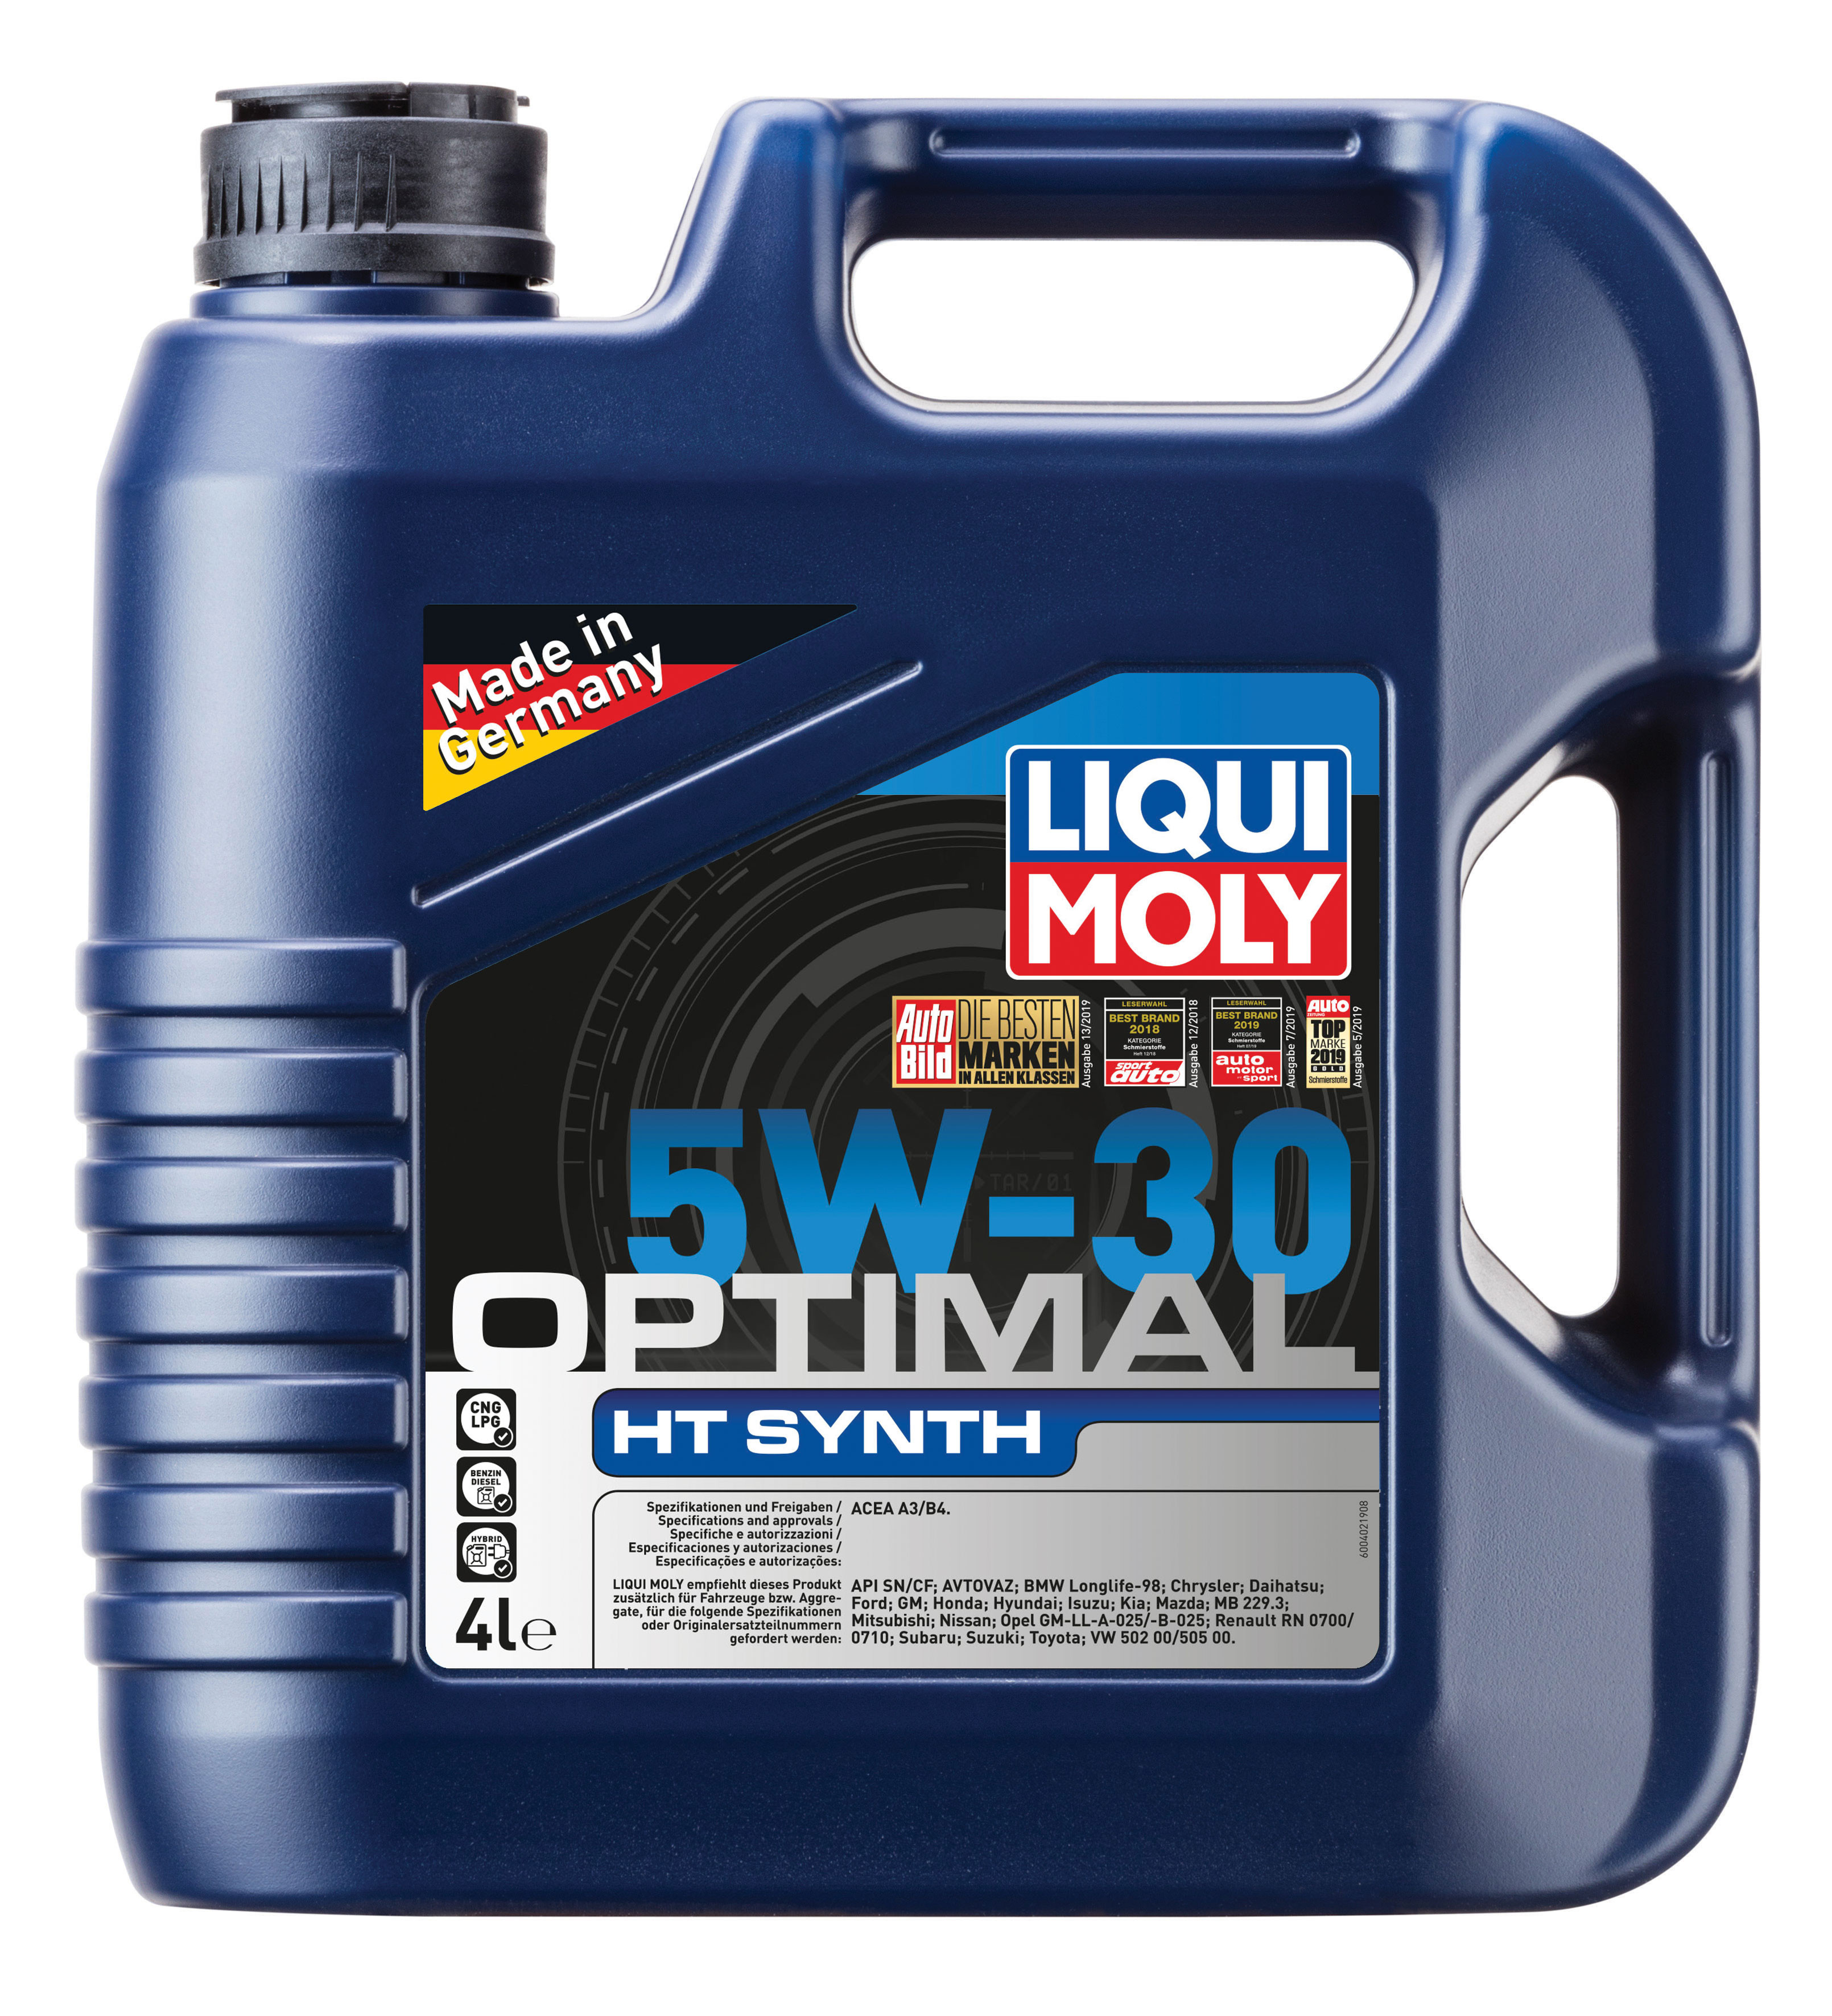 НС-синтетическое моторное масло Liqui Moly Optimal HT Synth 5W-30 4л